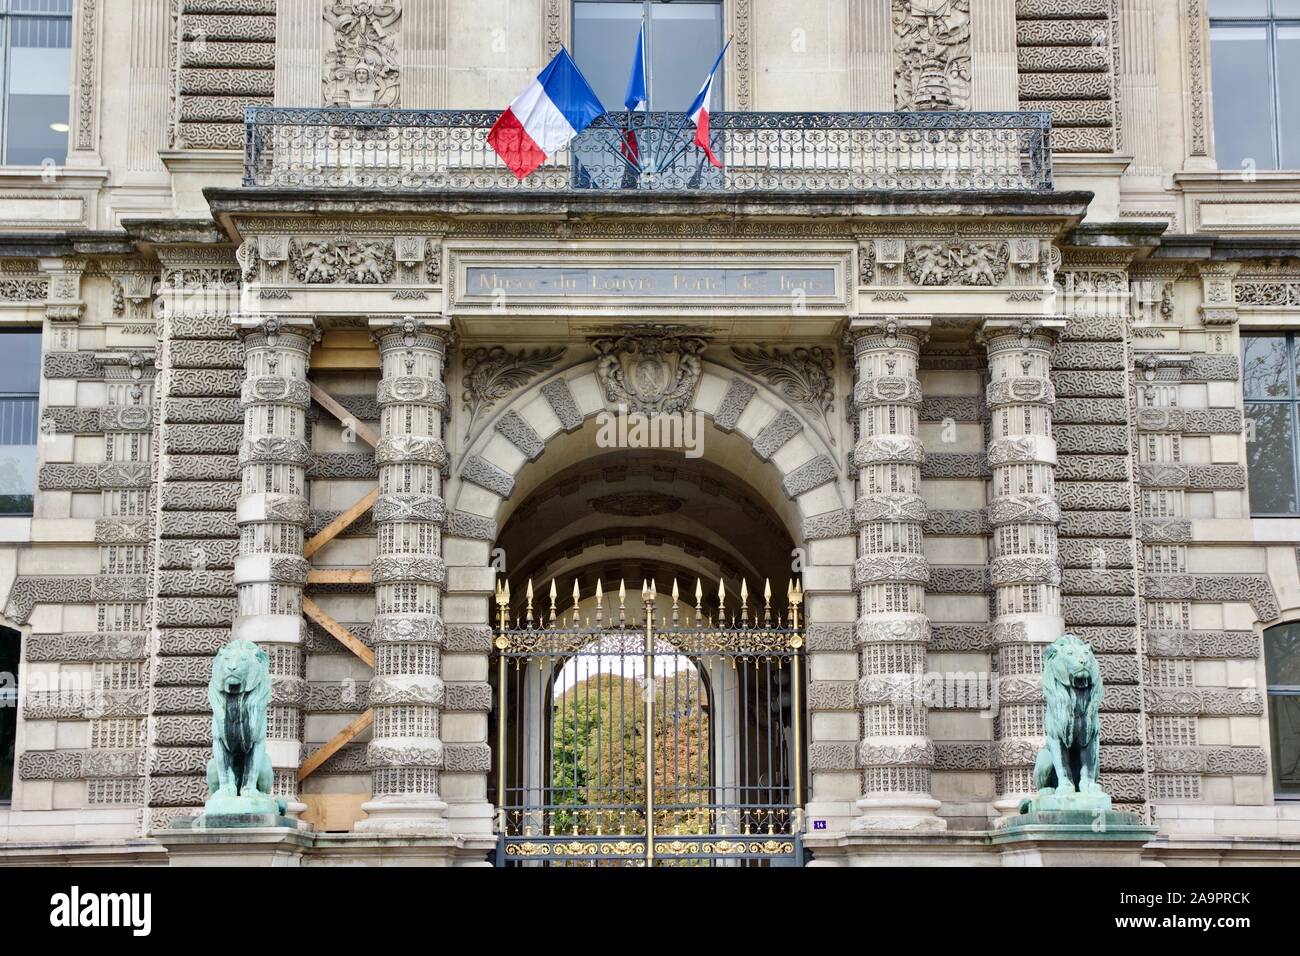 Porte Des Lions entrance or Lion's entrance of the Louvre, Paris Stock  Photo - Alamy